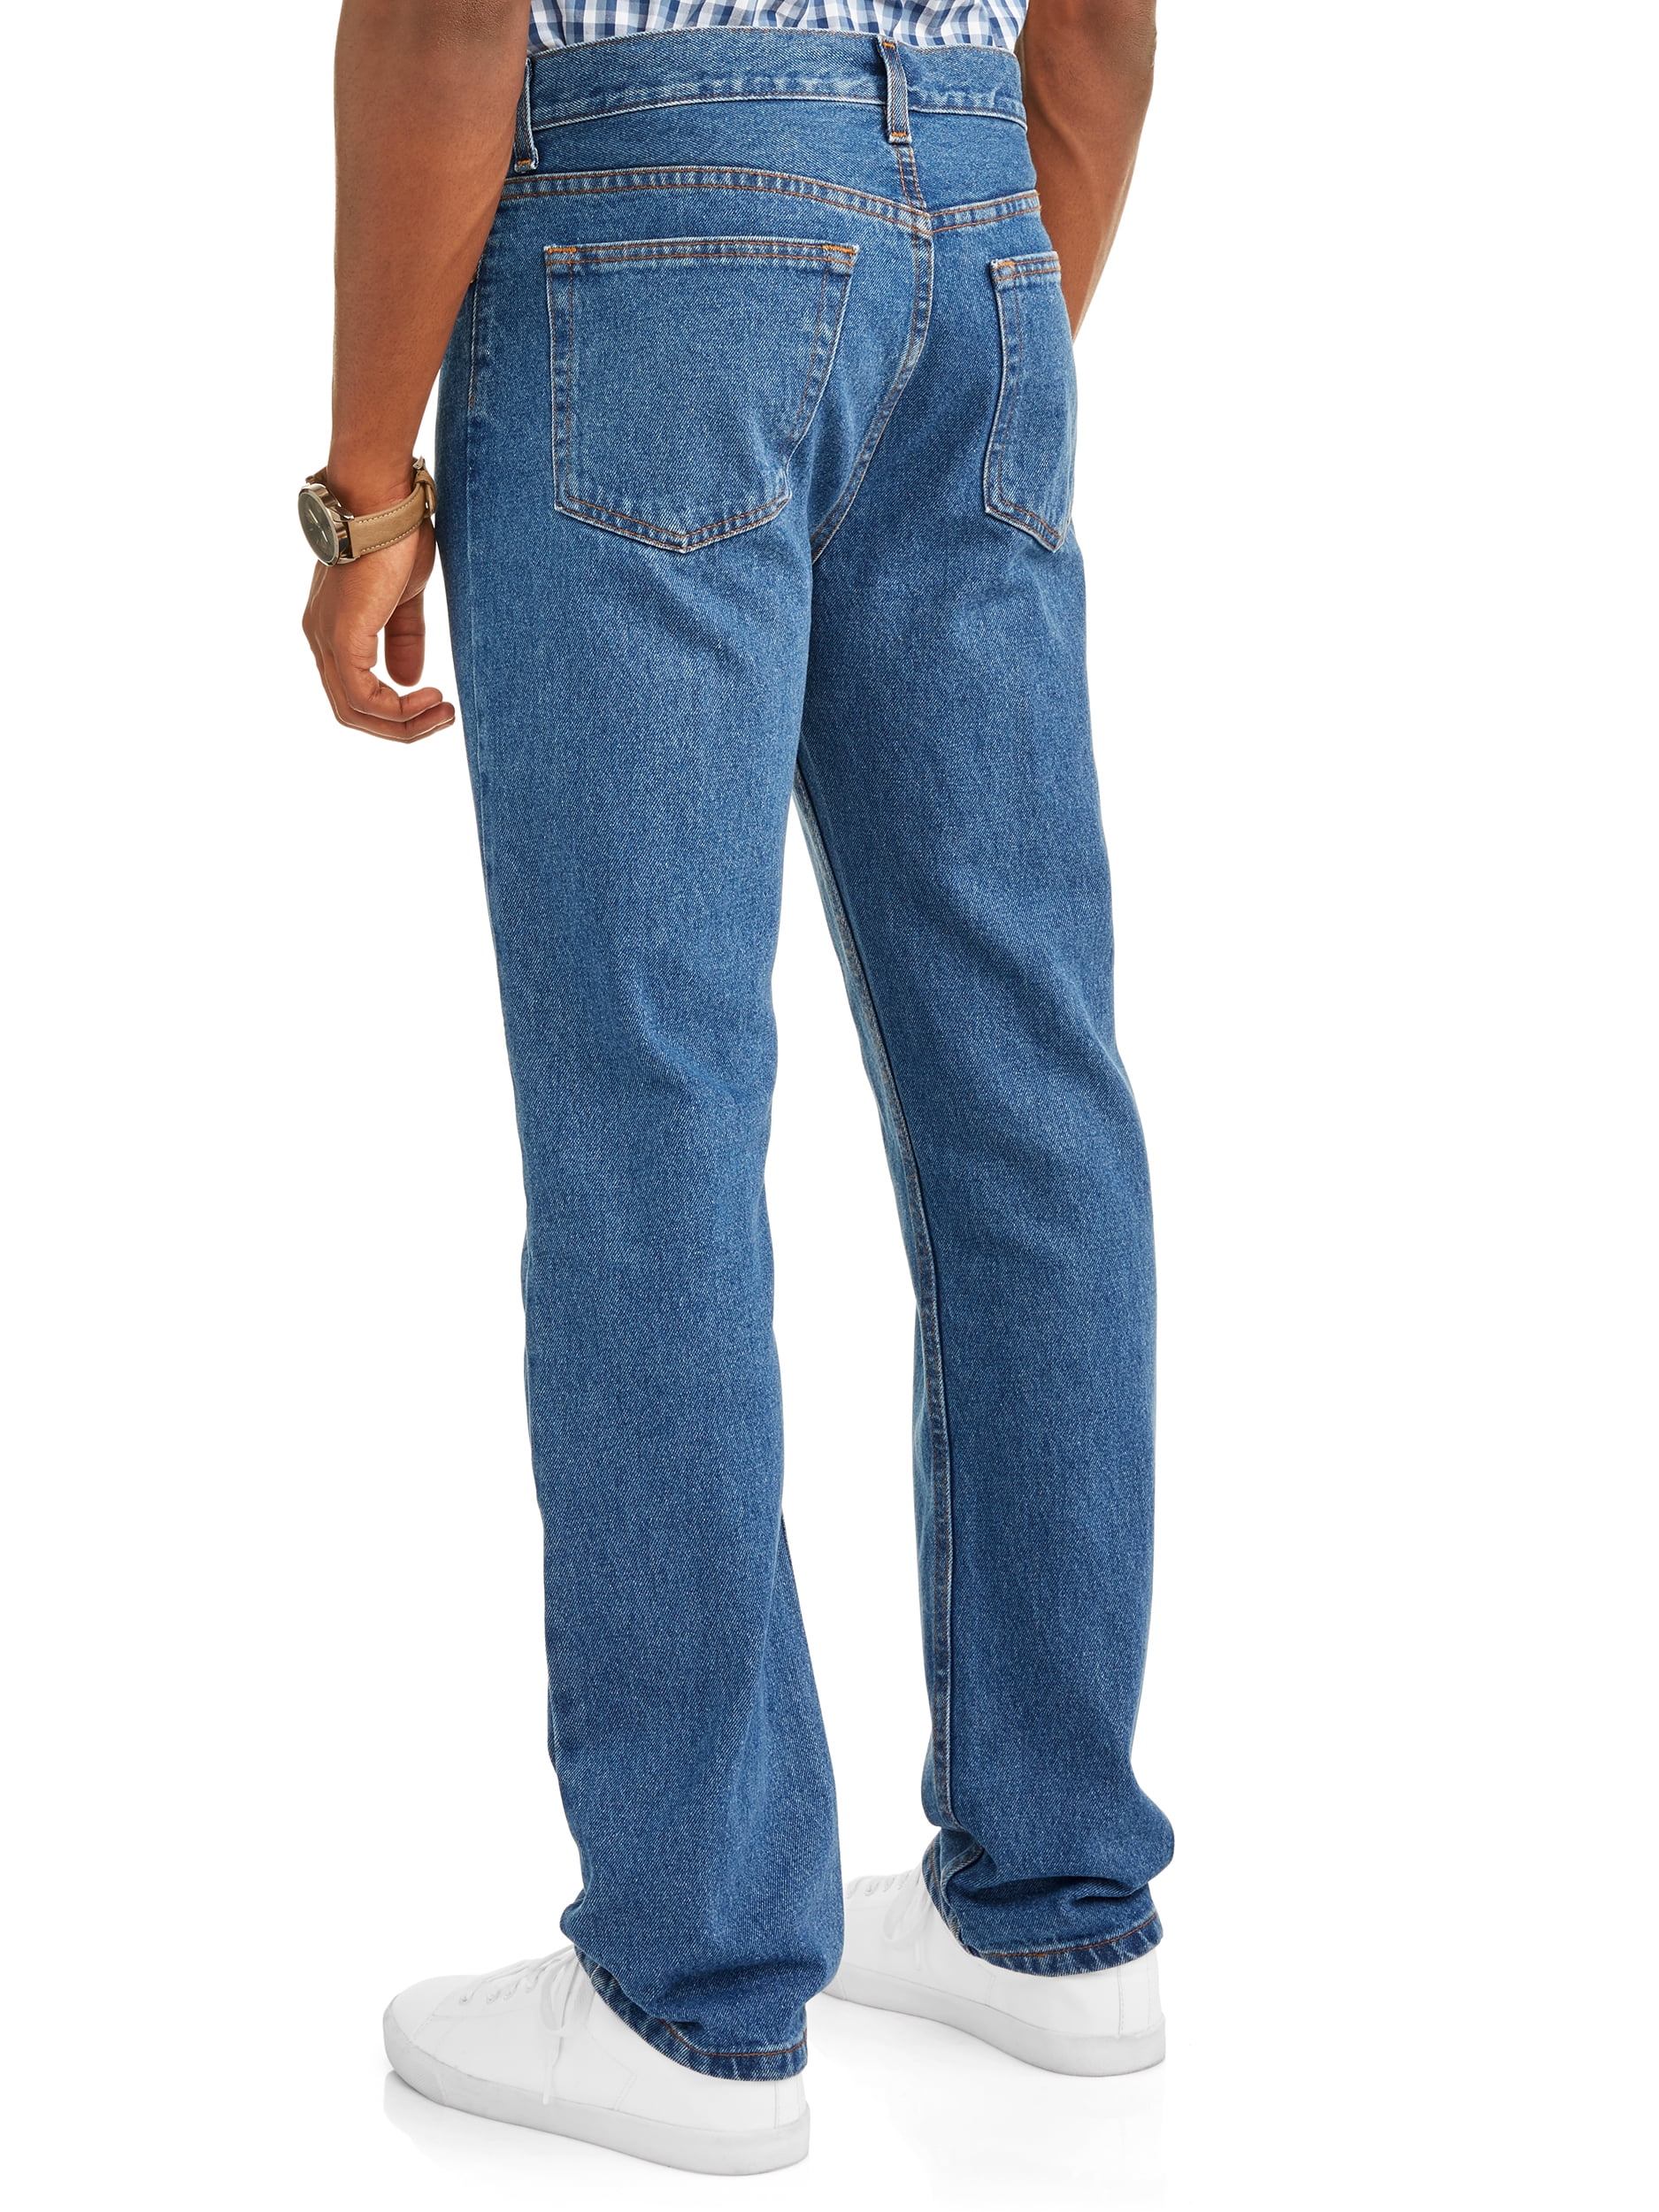 George Men's and Big Men's Jeans - Walmart.com